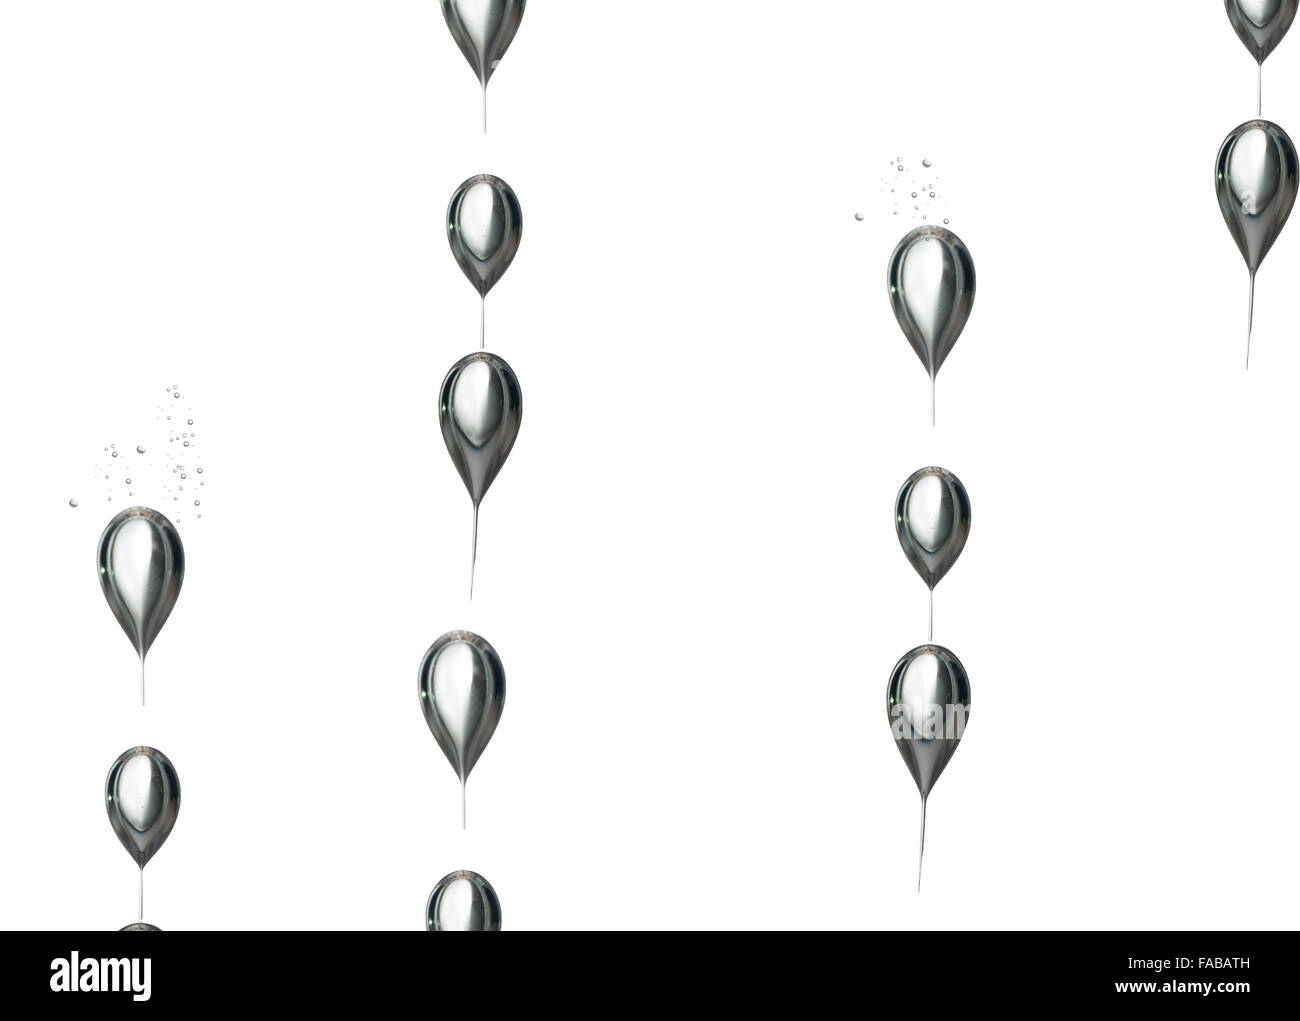 Eine Gruppe von Luftblasen, die in Richtung zur Oberfläche steigt Stockfoto